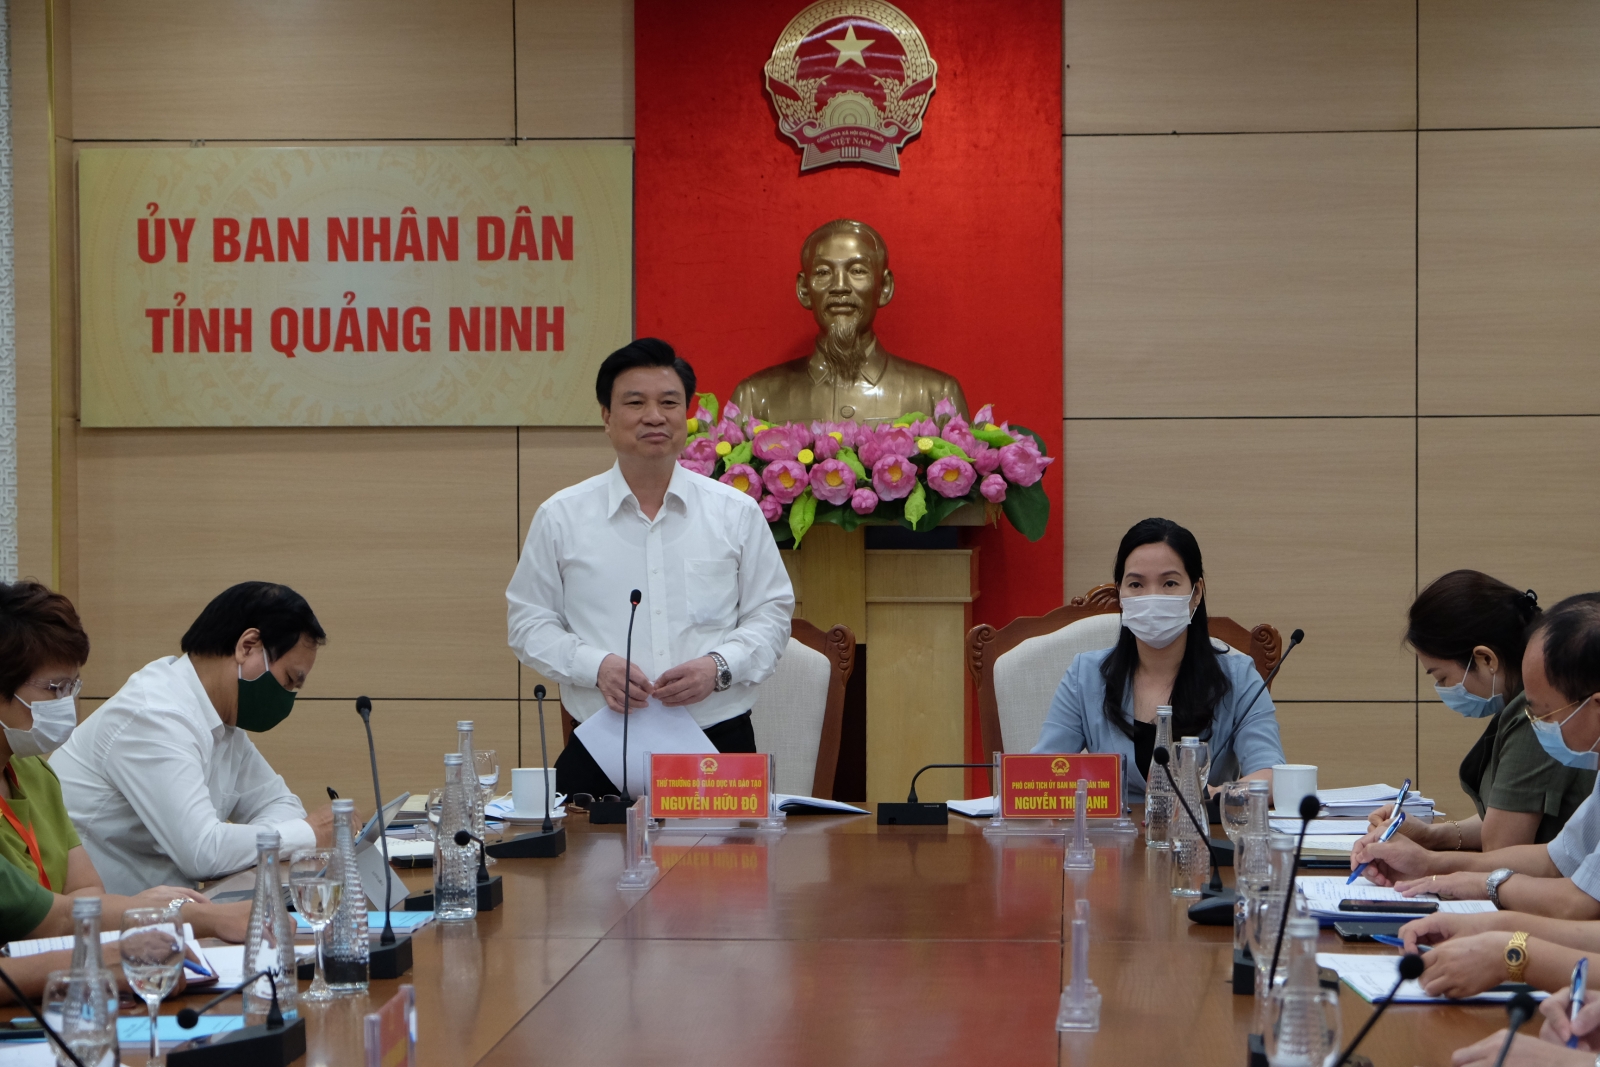 Thứ trưởng Nguyễn Hữu Độ: Đảm bảo mục tiêu kép an toàn, nghiêm túc cho Kỳ thi tốt nghiệp THPT - Ảnh minh hoạ 2